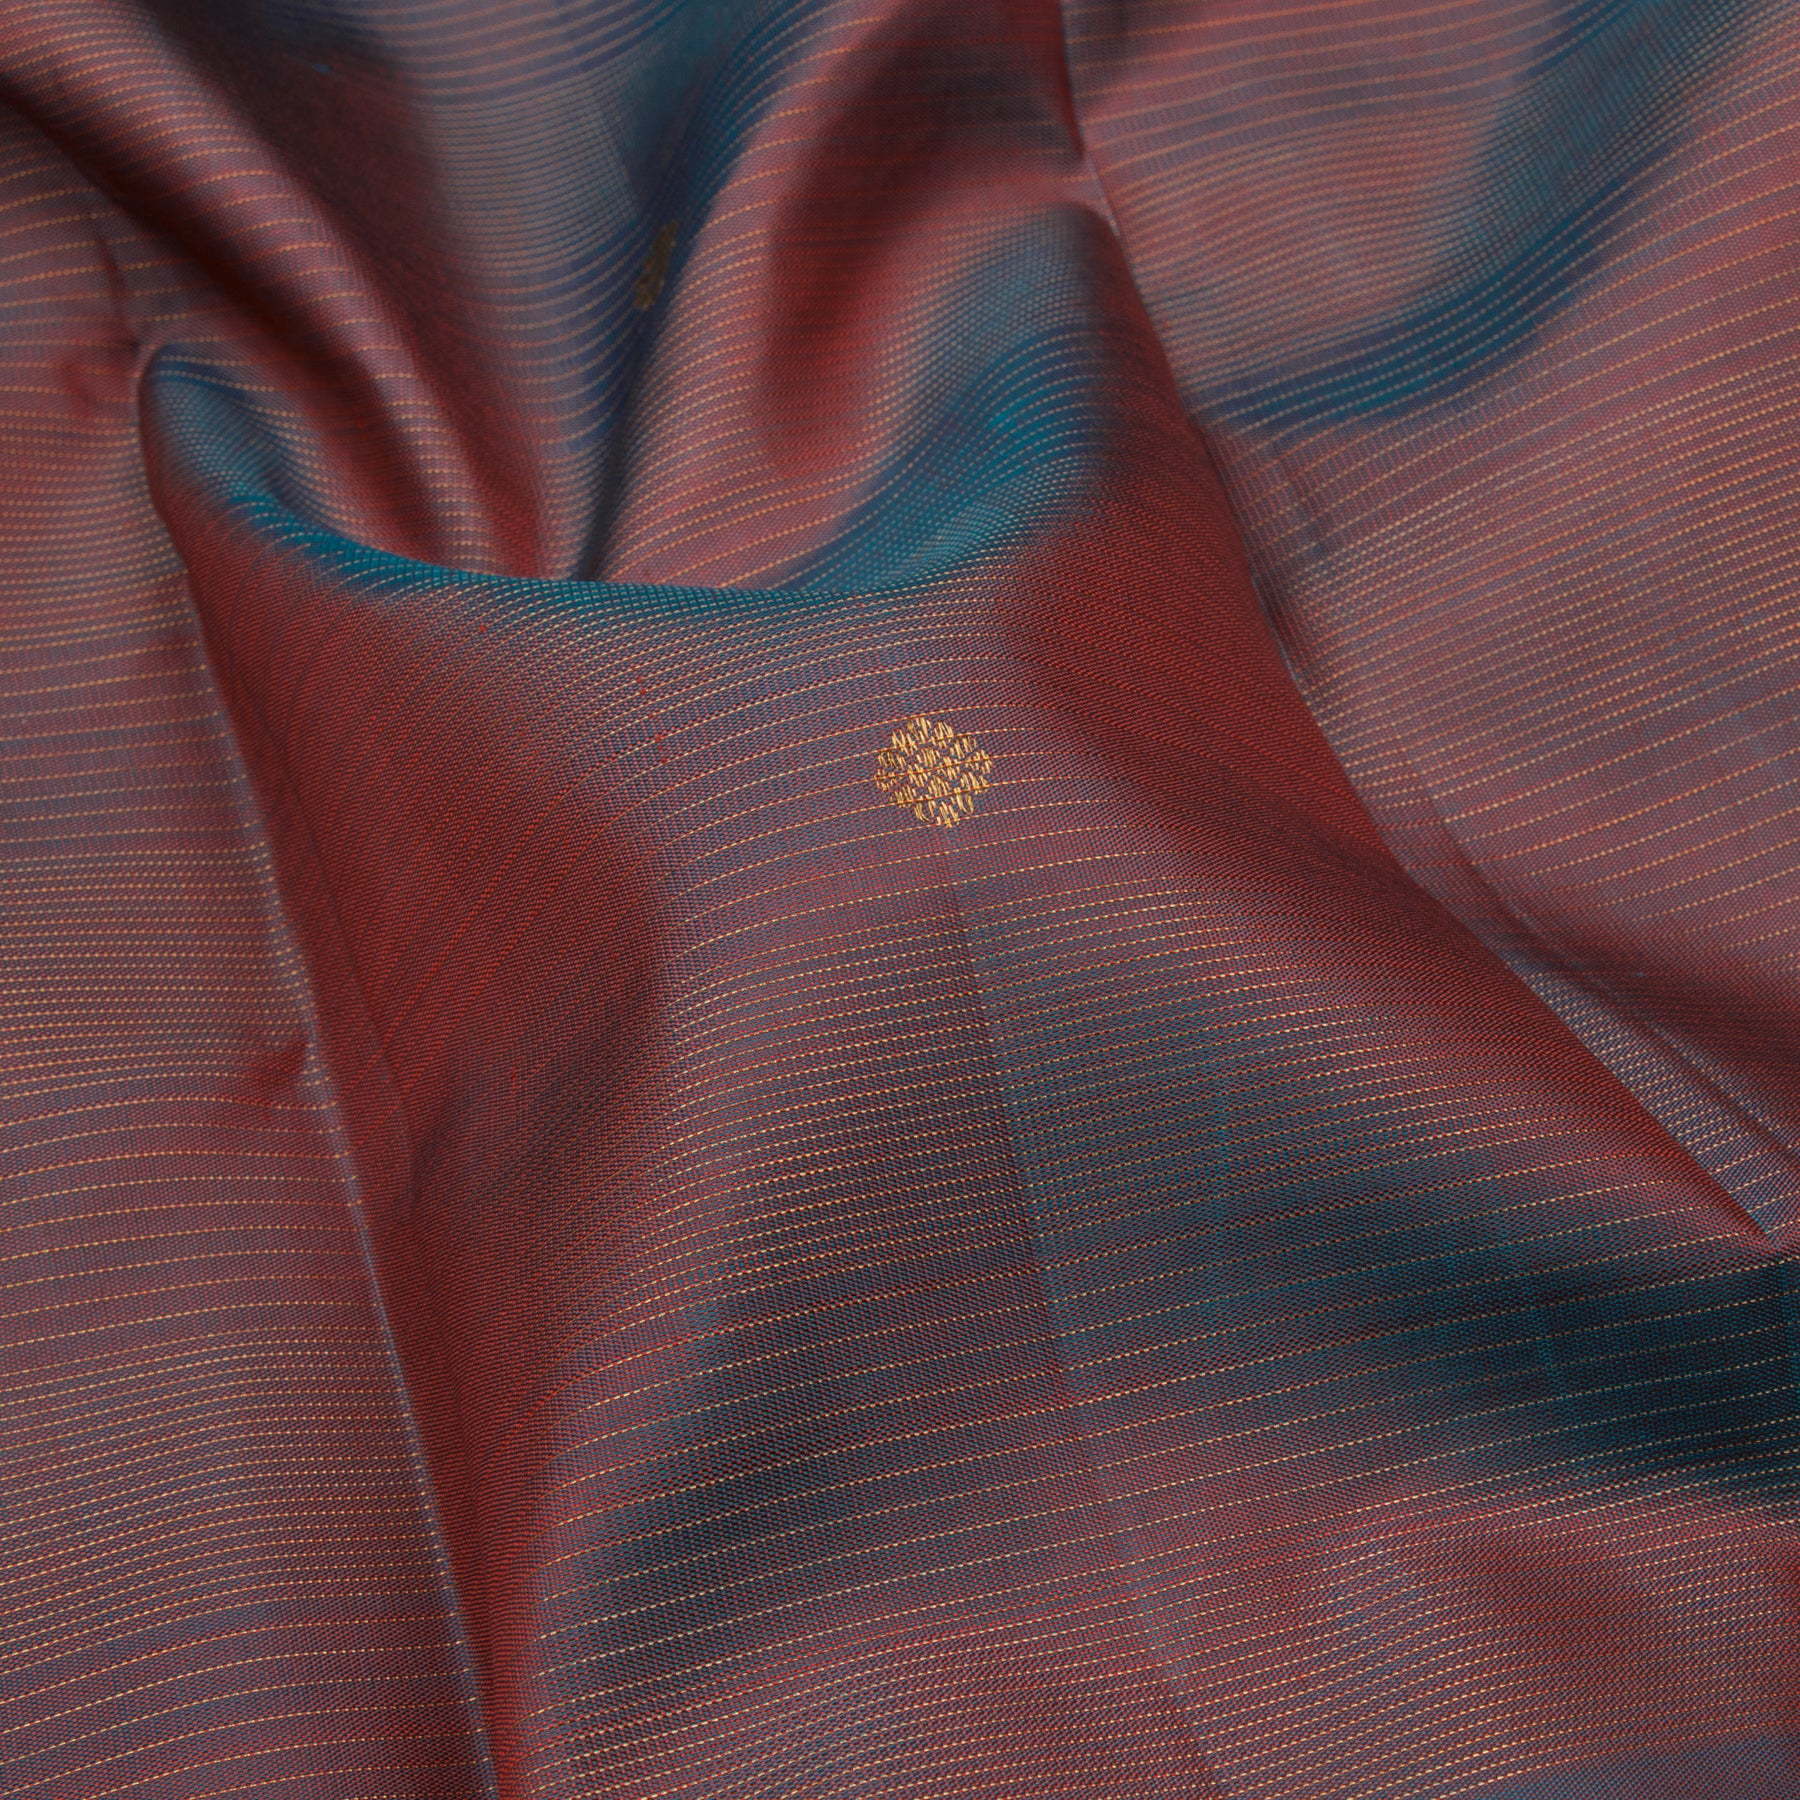 Kanakavalli Kanjivaram Silk Sari 23-599-HS001-11240 - Fabric View